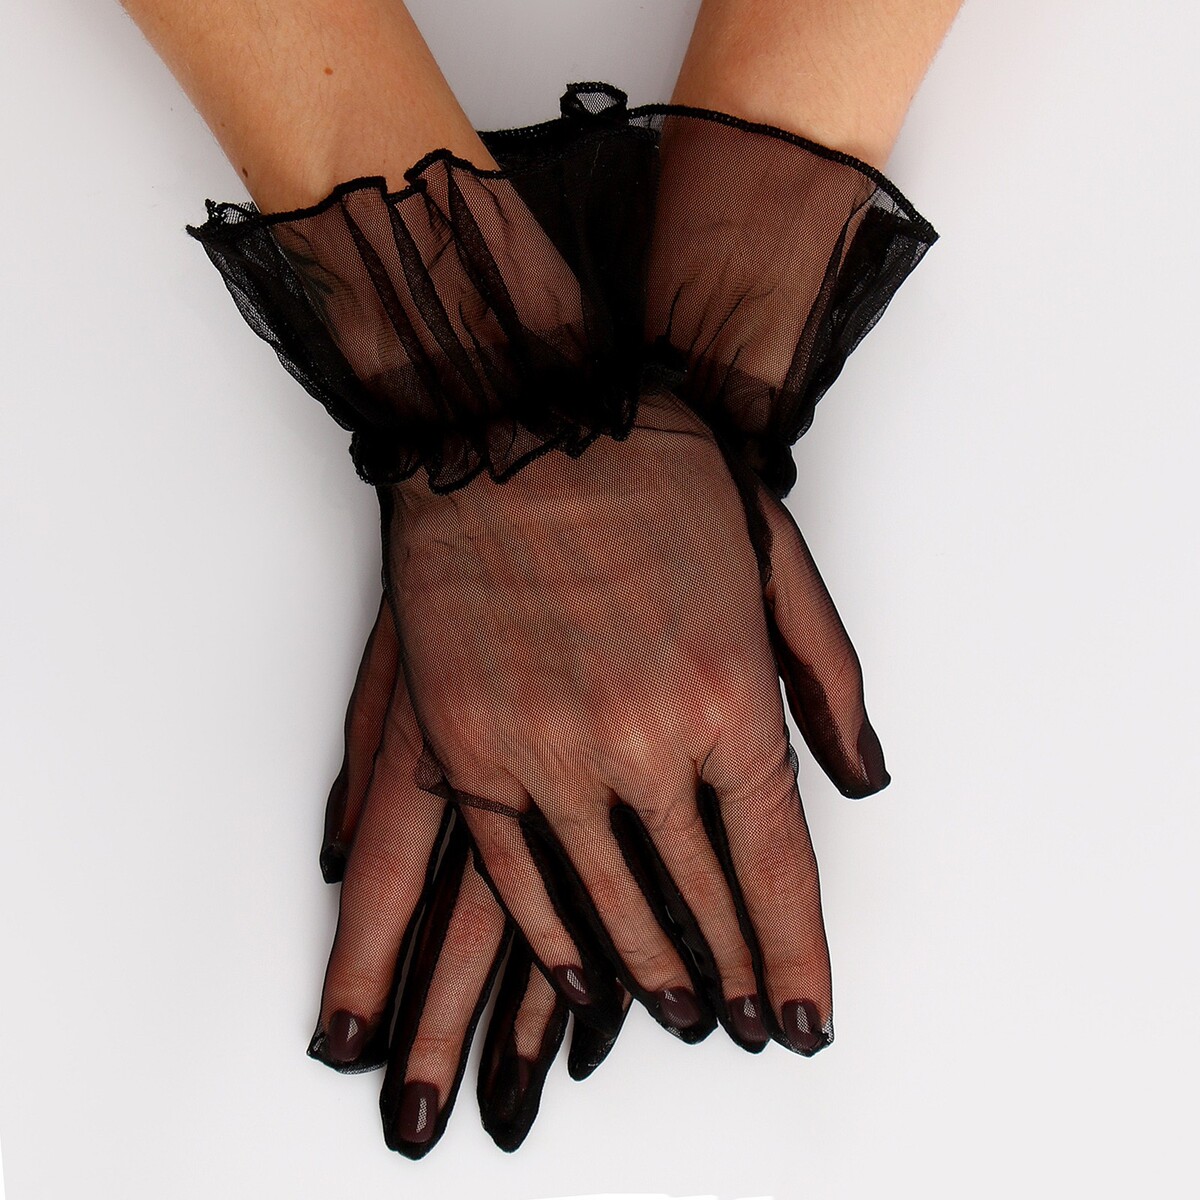 Карнавальный аксессуар - перчатки прозрачные с юбочкой, цвет черный карнавальный аксессуар перчатки прозрачные с длинной юбочкой